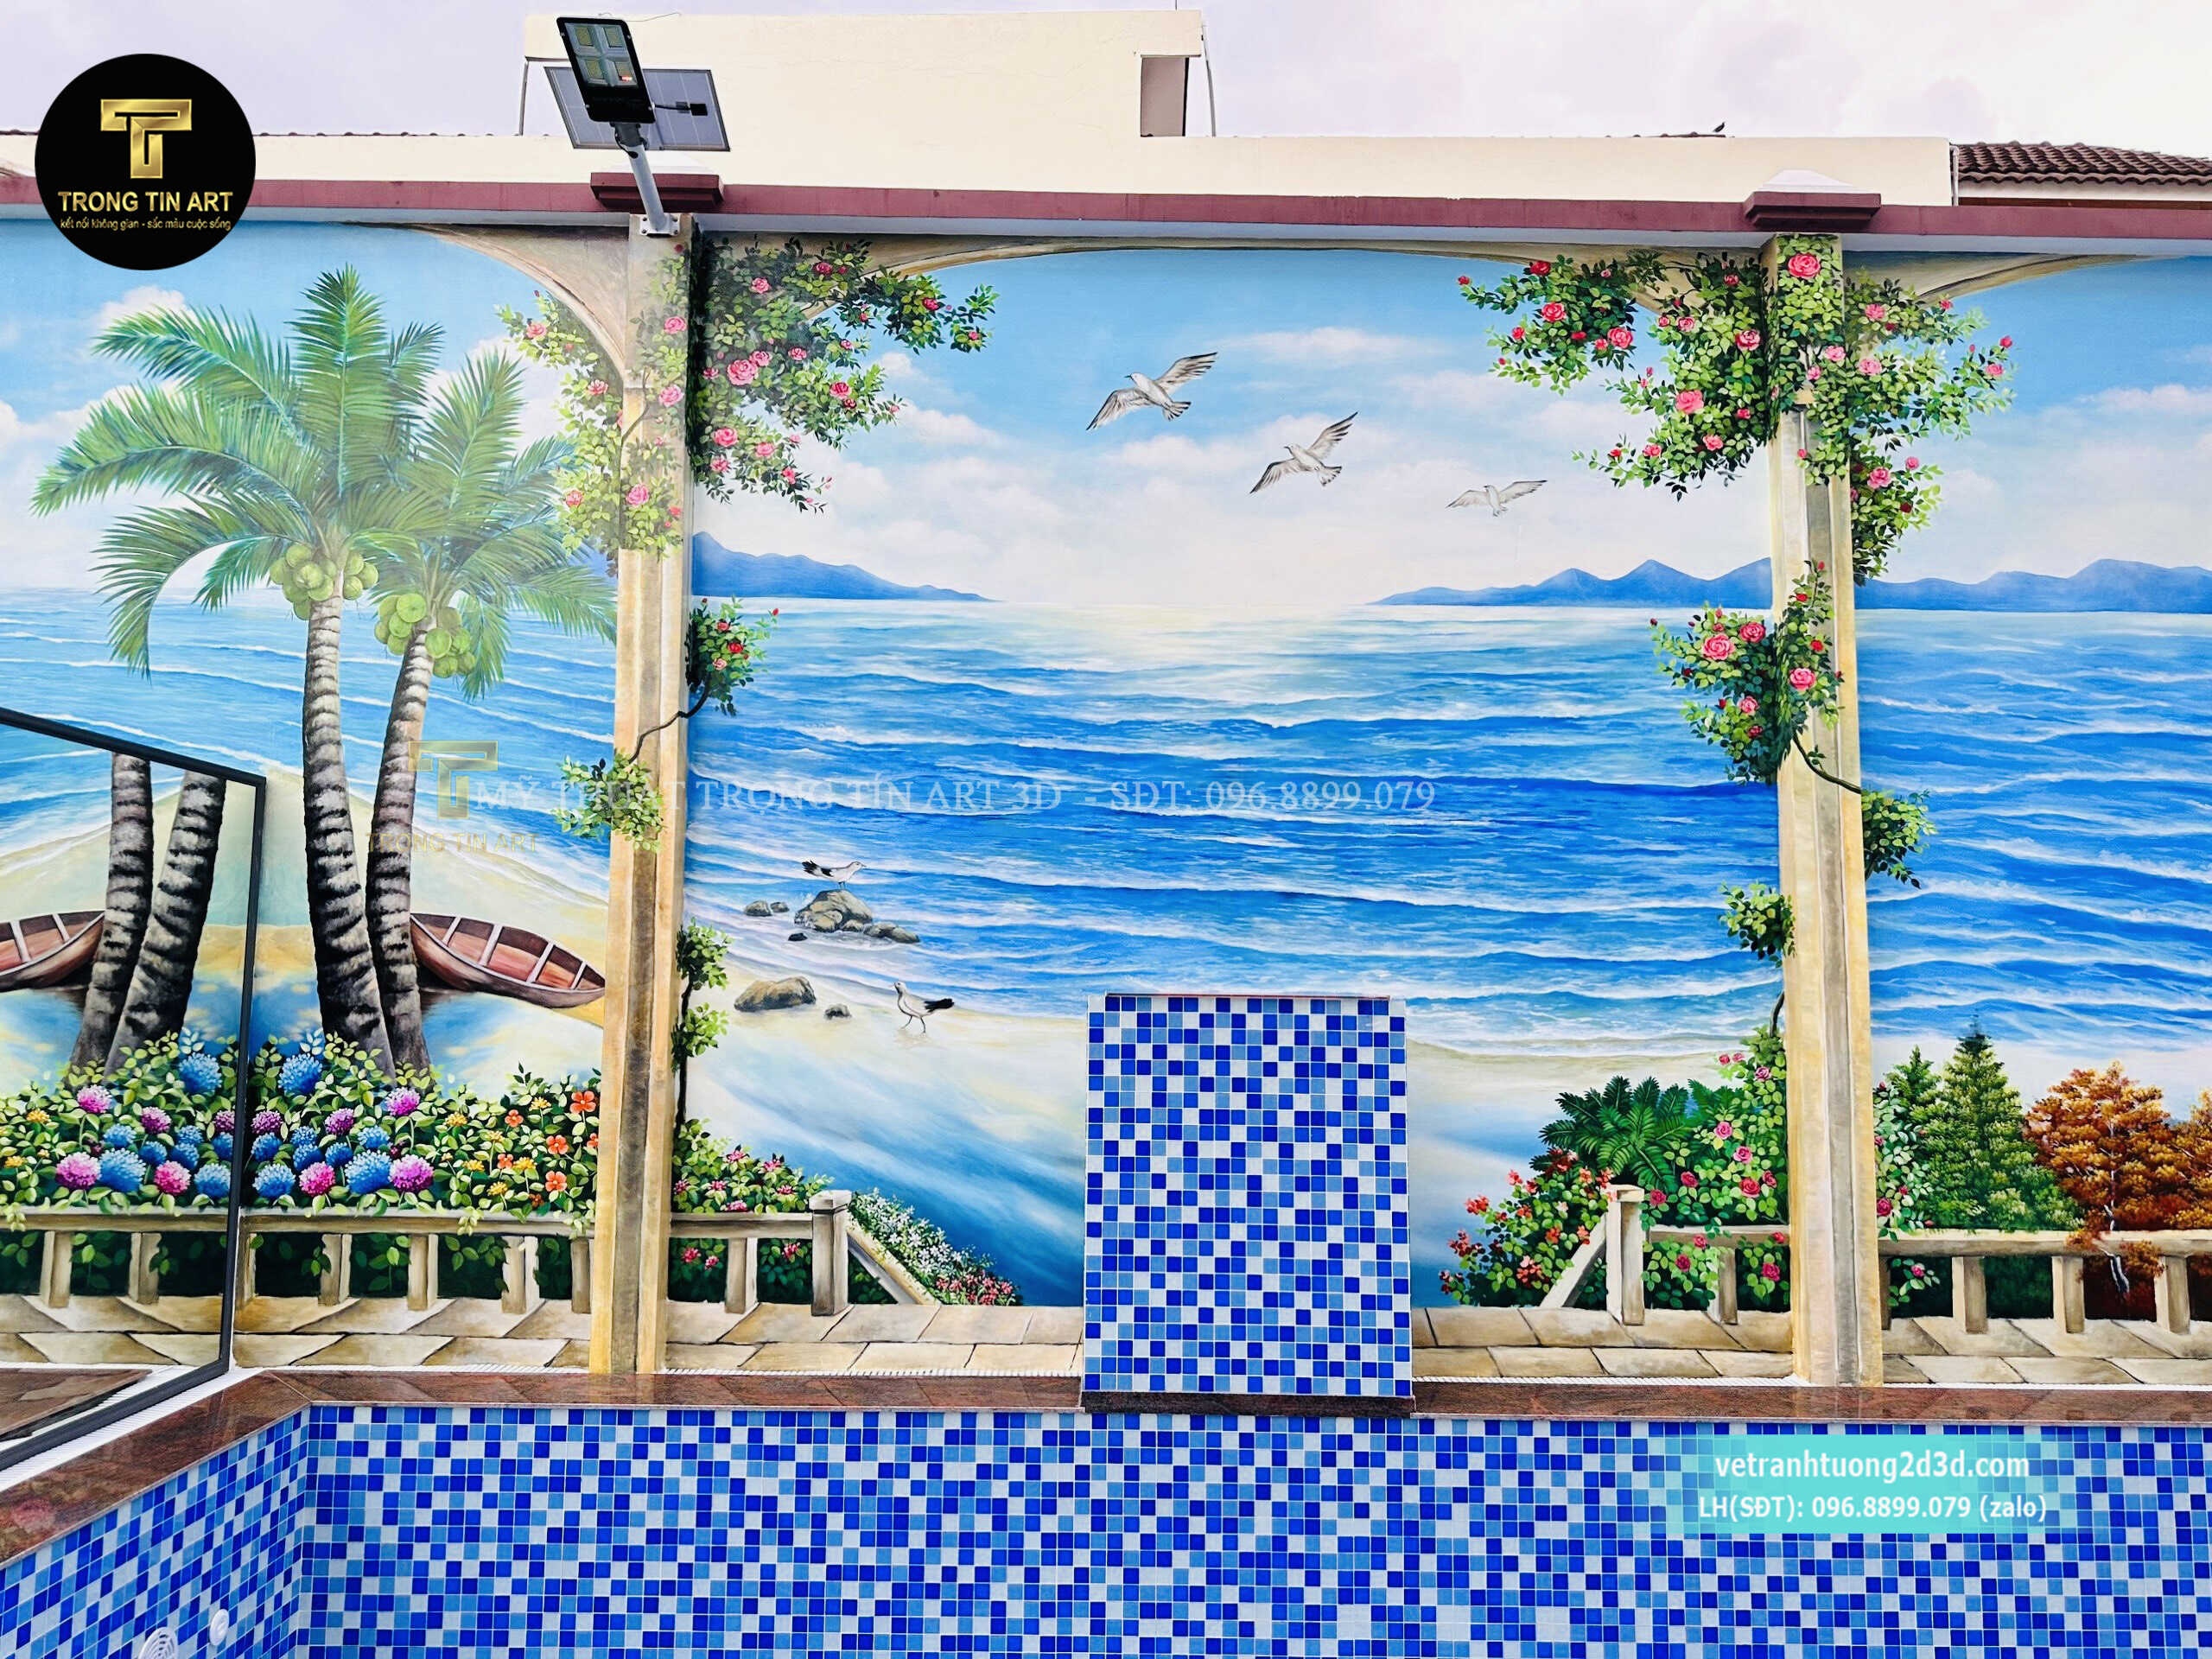 vẽ tranh hồ bơi,tranh hồ bơi,Dịch Vụ Vẽ Tranh Tường 3D Phong Cảnh Biển,tranh cảnh biển,vẽ tranh tường cảnh biển,tranh đại dương,vẽ tranh 3d